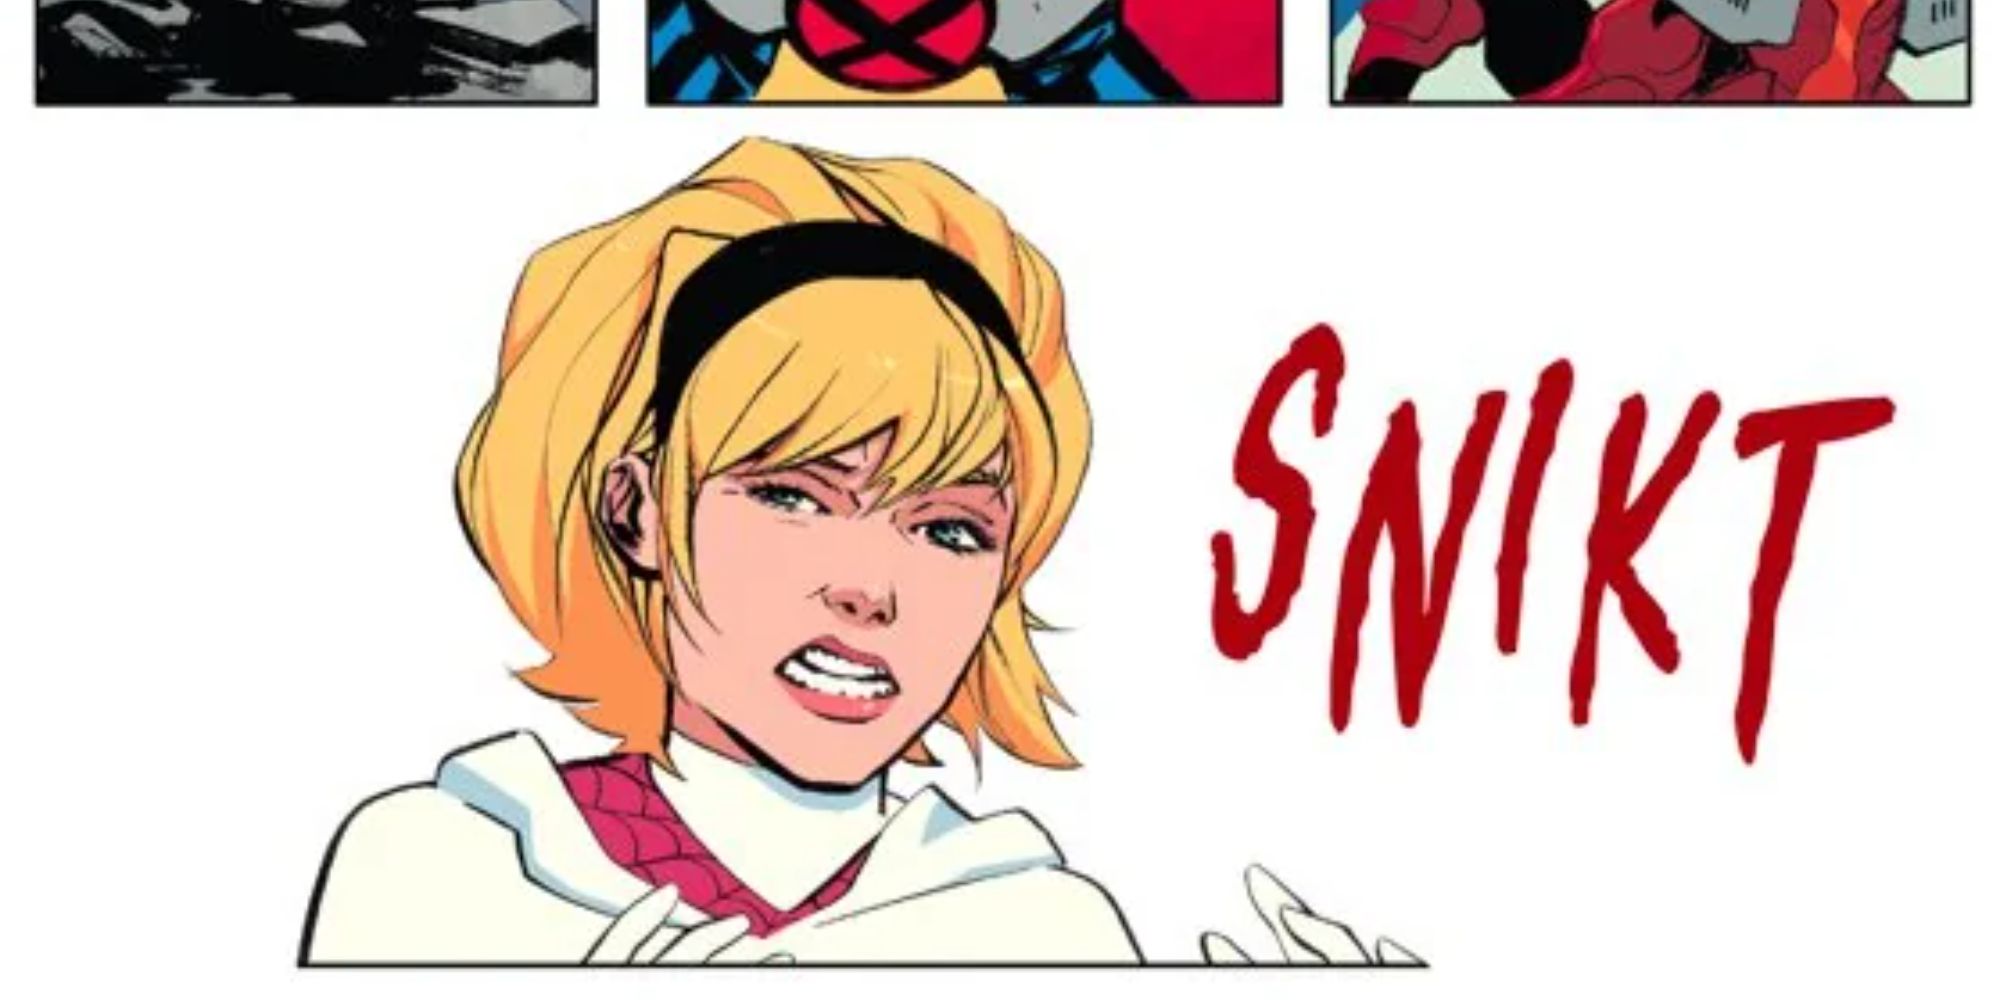 Spider-Gwen hearing a SNIKT